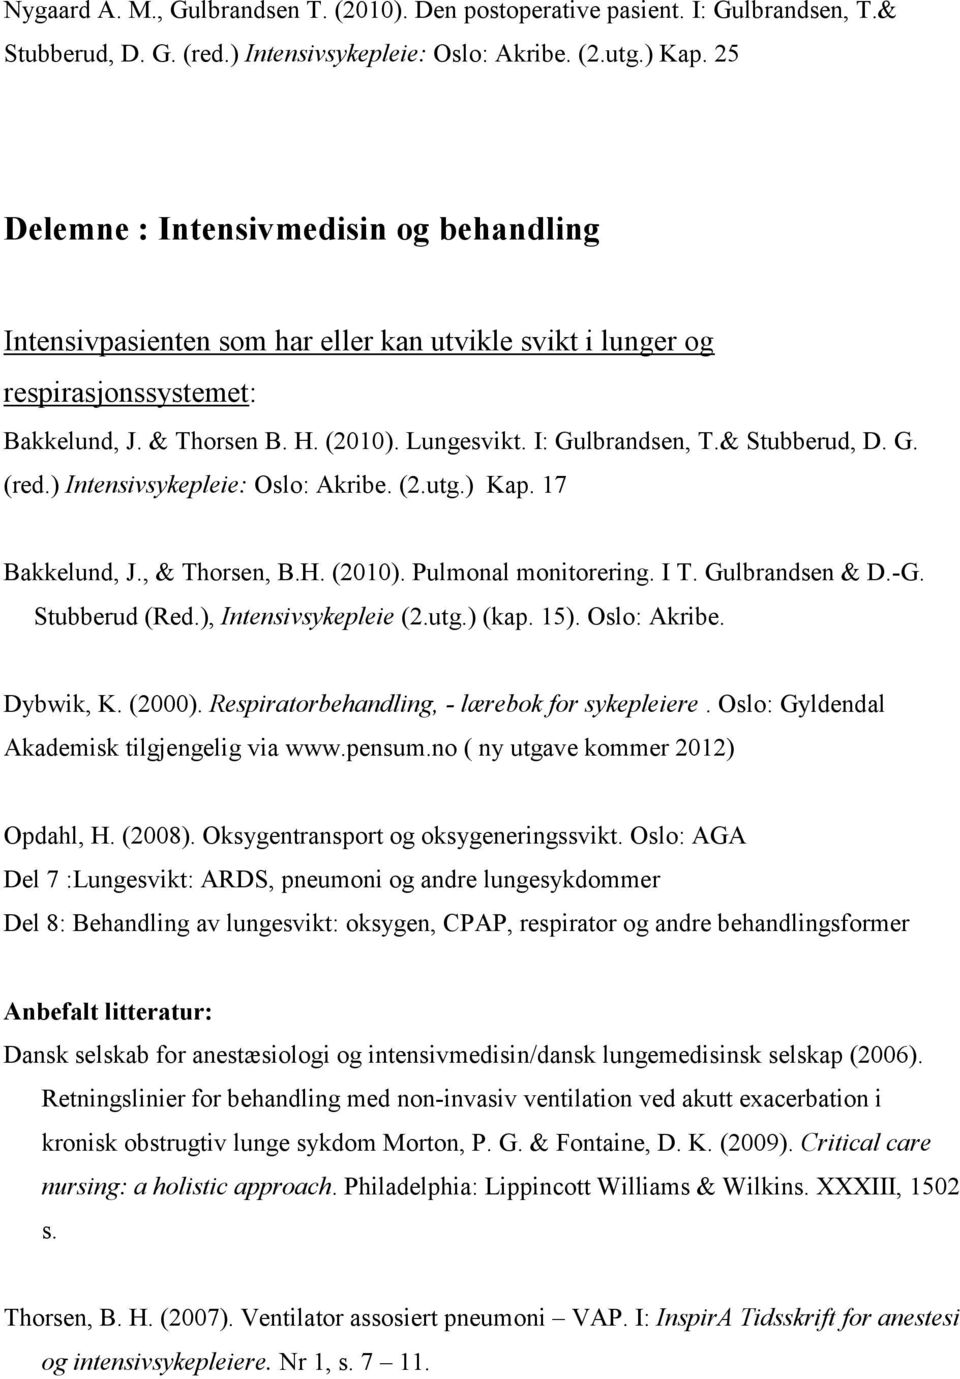 & Stubberud, D. G. (red.) Intensivsykepleie: Oslo: Akribe. (2.utg.) Kap. 17 Bakkelund, J., & Thorsen, B.H. (2010). Pulmonal monitorering. I T. Gulbrandsen & D.-G. Stubberud (Red.